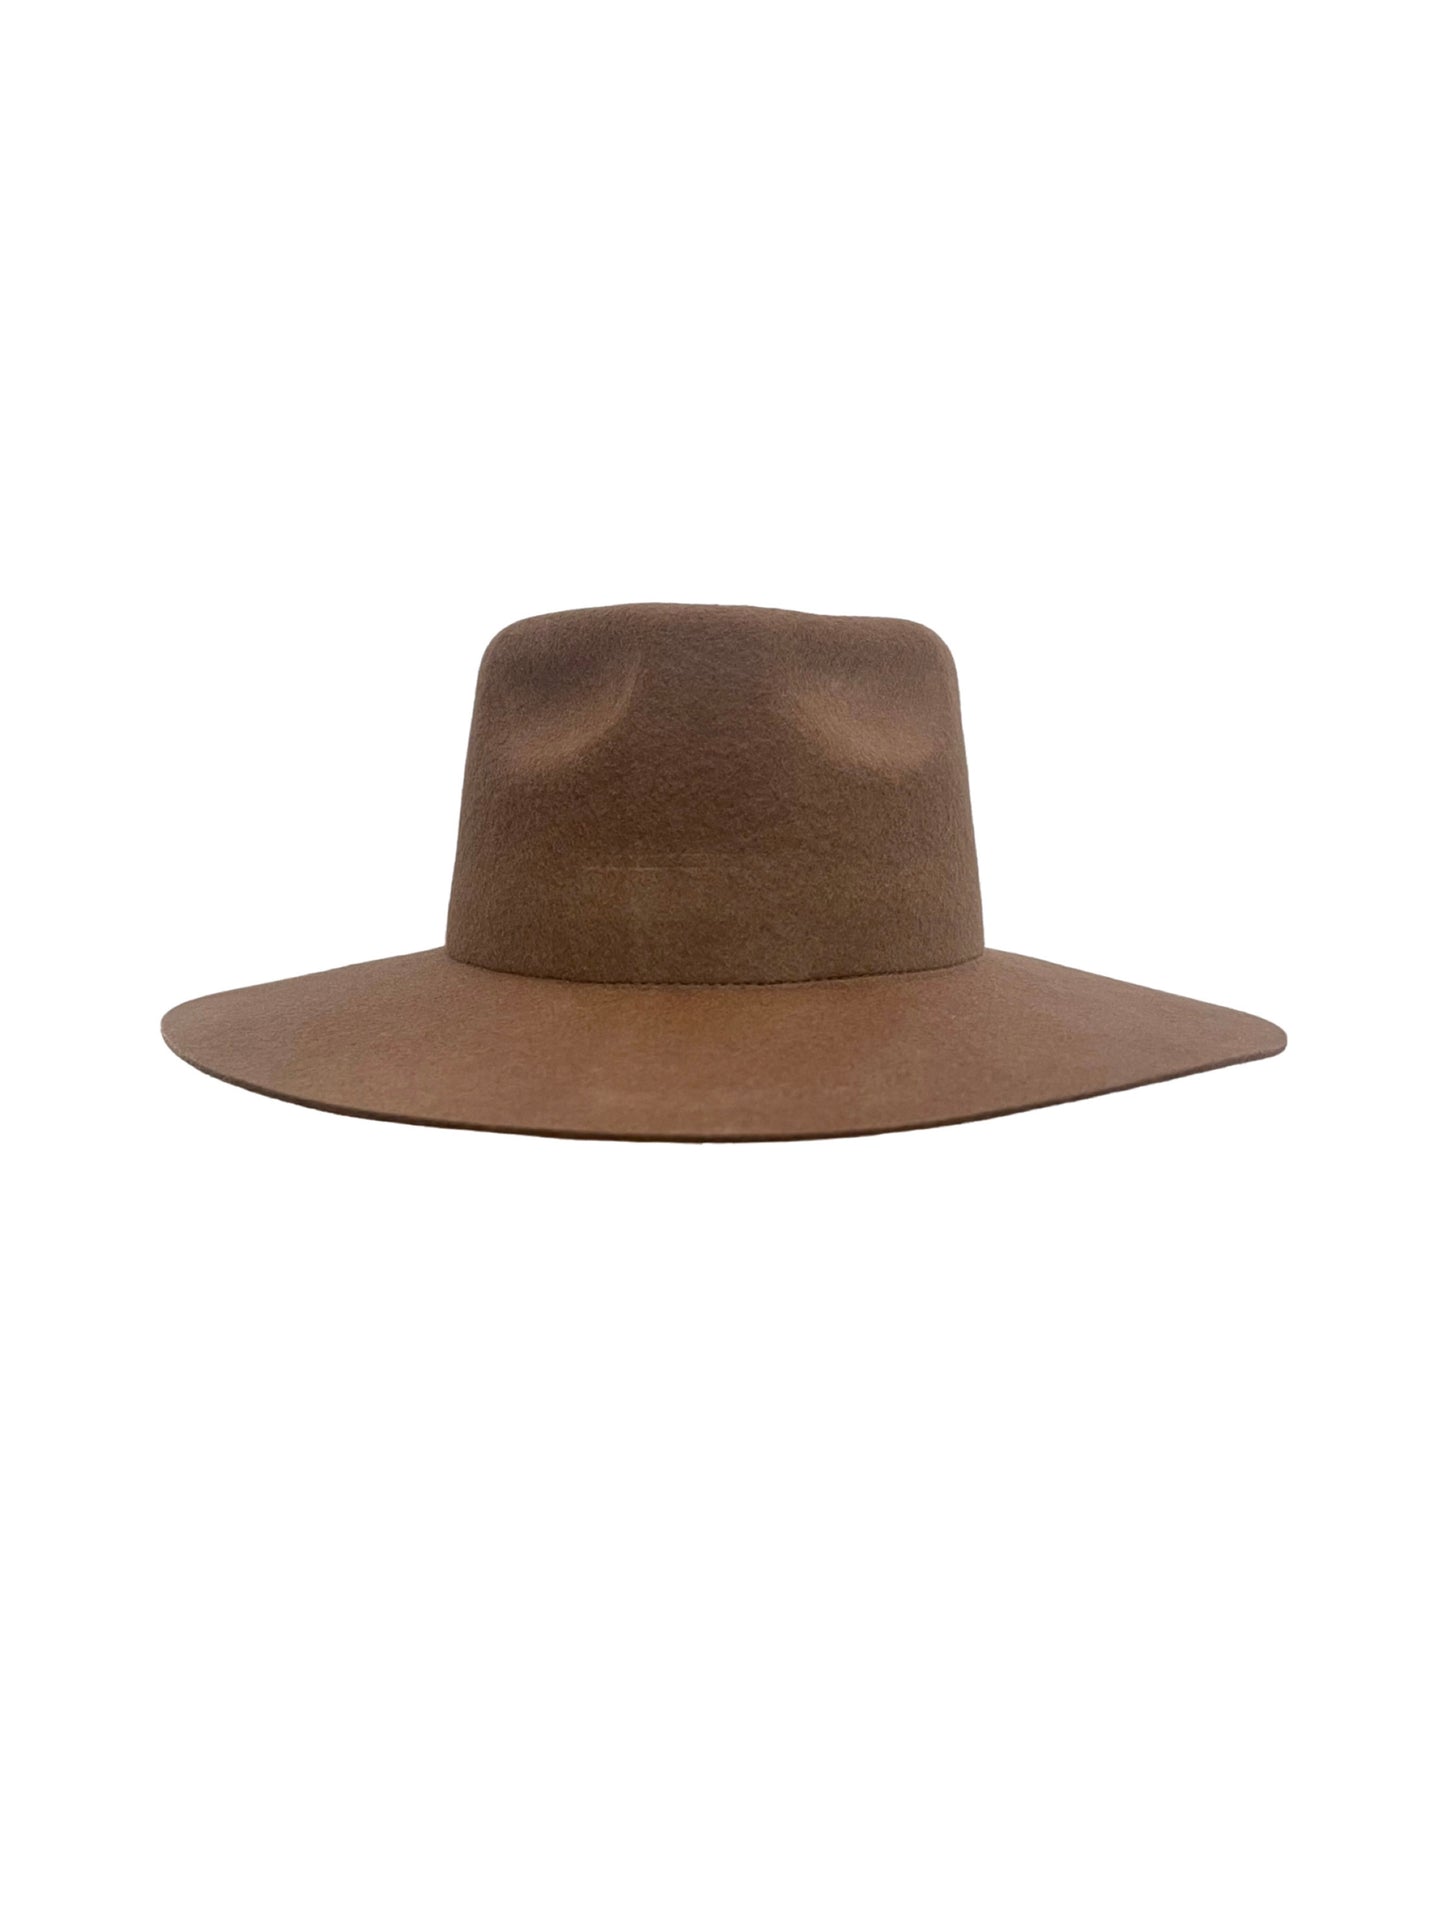 the fedora hat saddle front